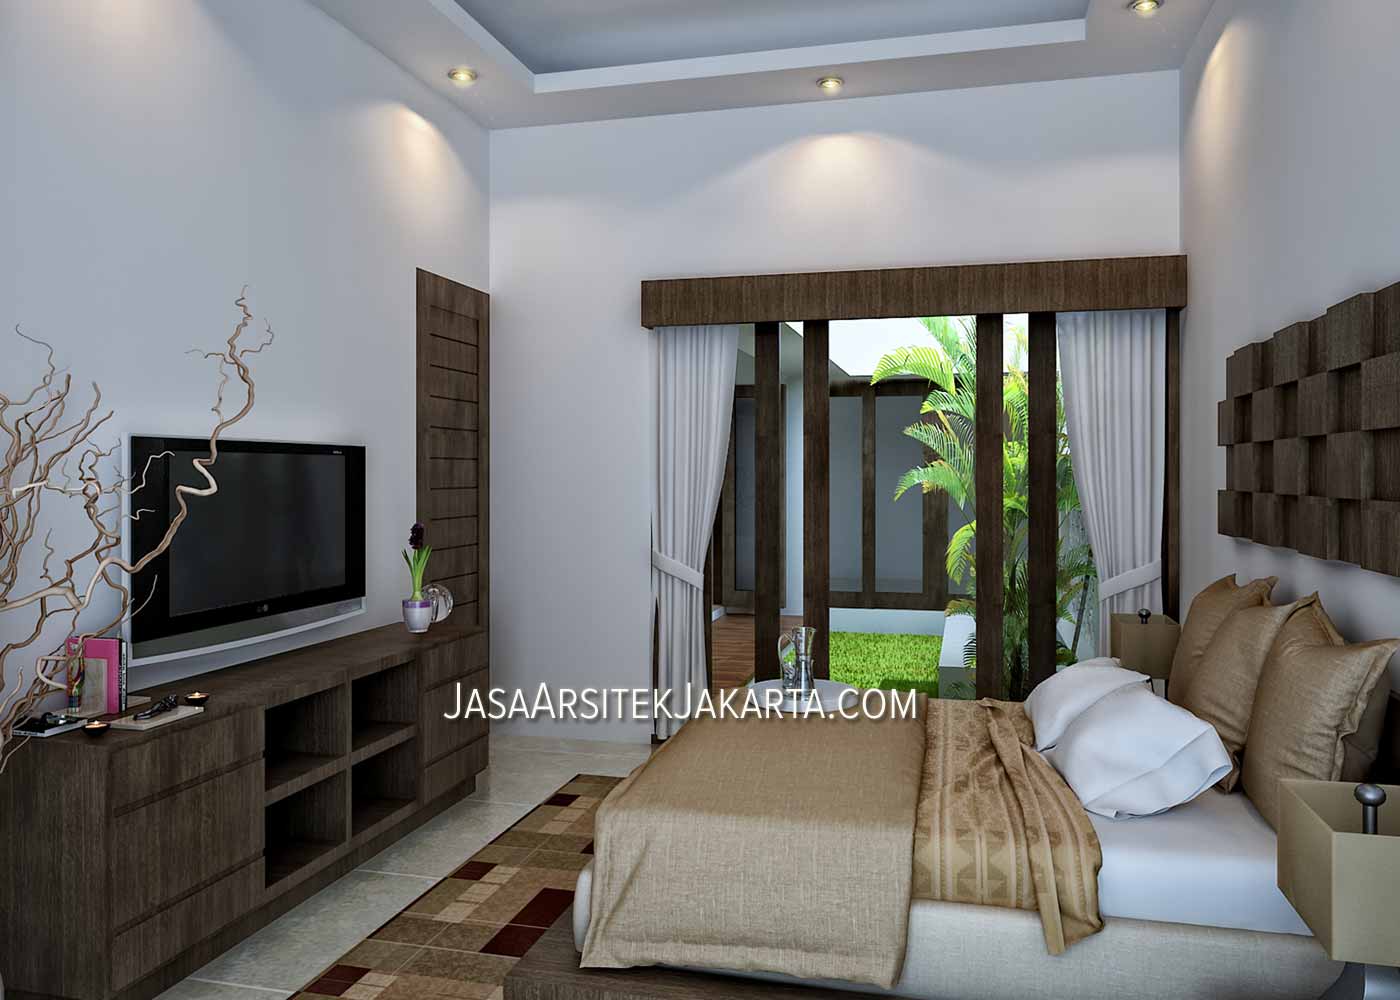  Desain  Rumah 5 kamar Luas 330 m2 Bp Havid di Malang Jasa 